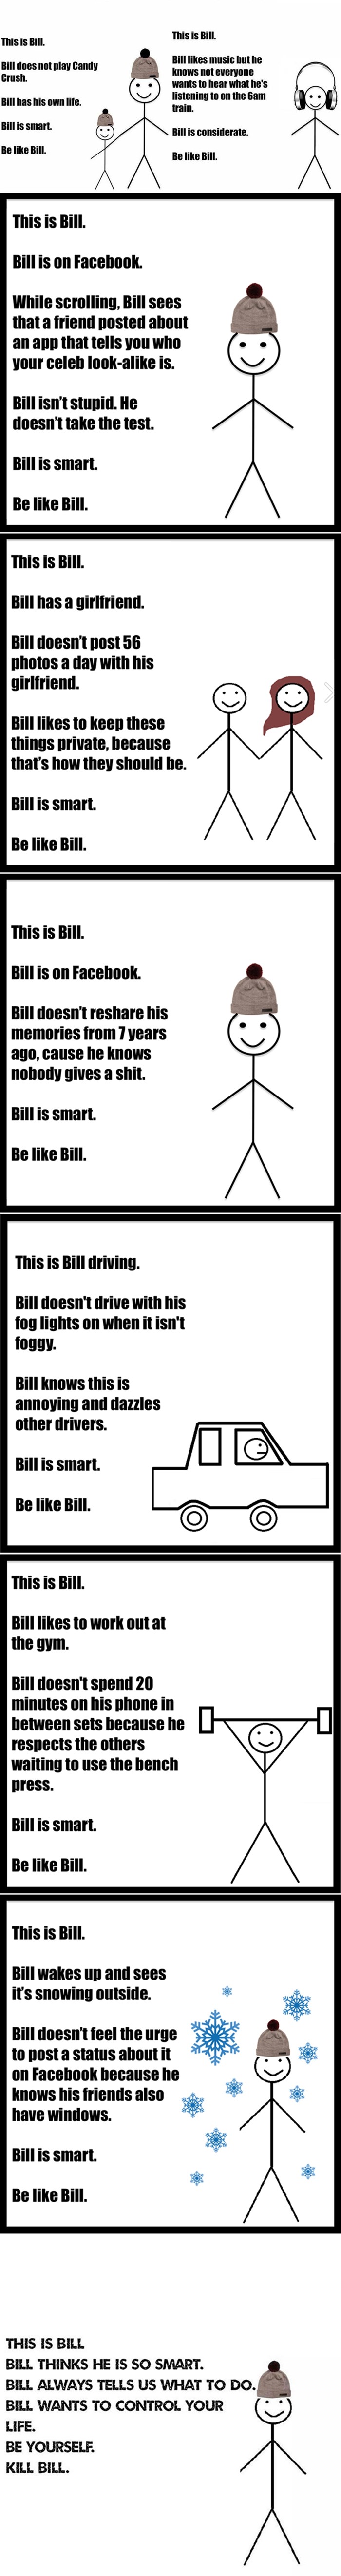 Ovo je "Be like Bill", originalni meme kojeg i Balkanci plagiraju